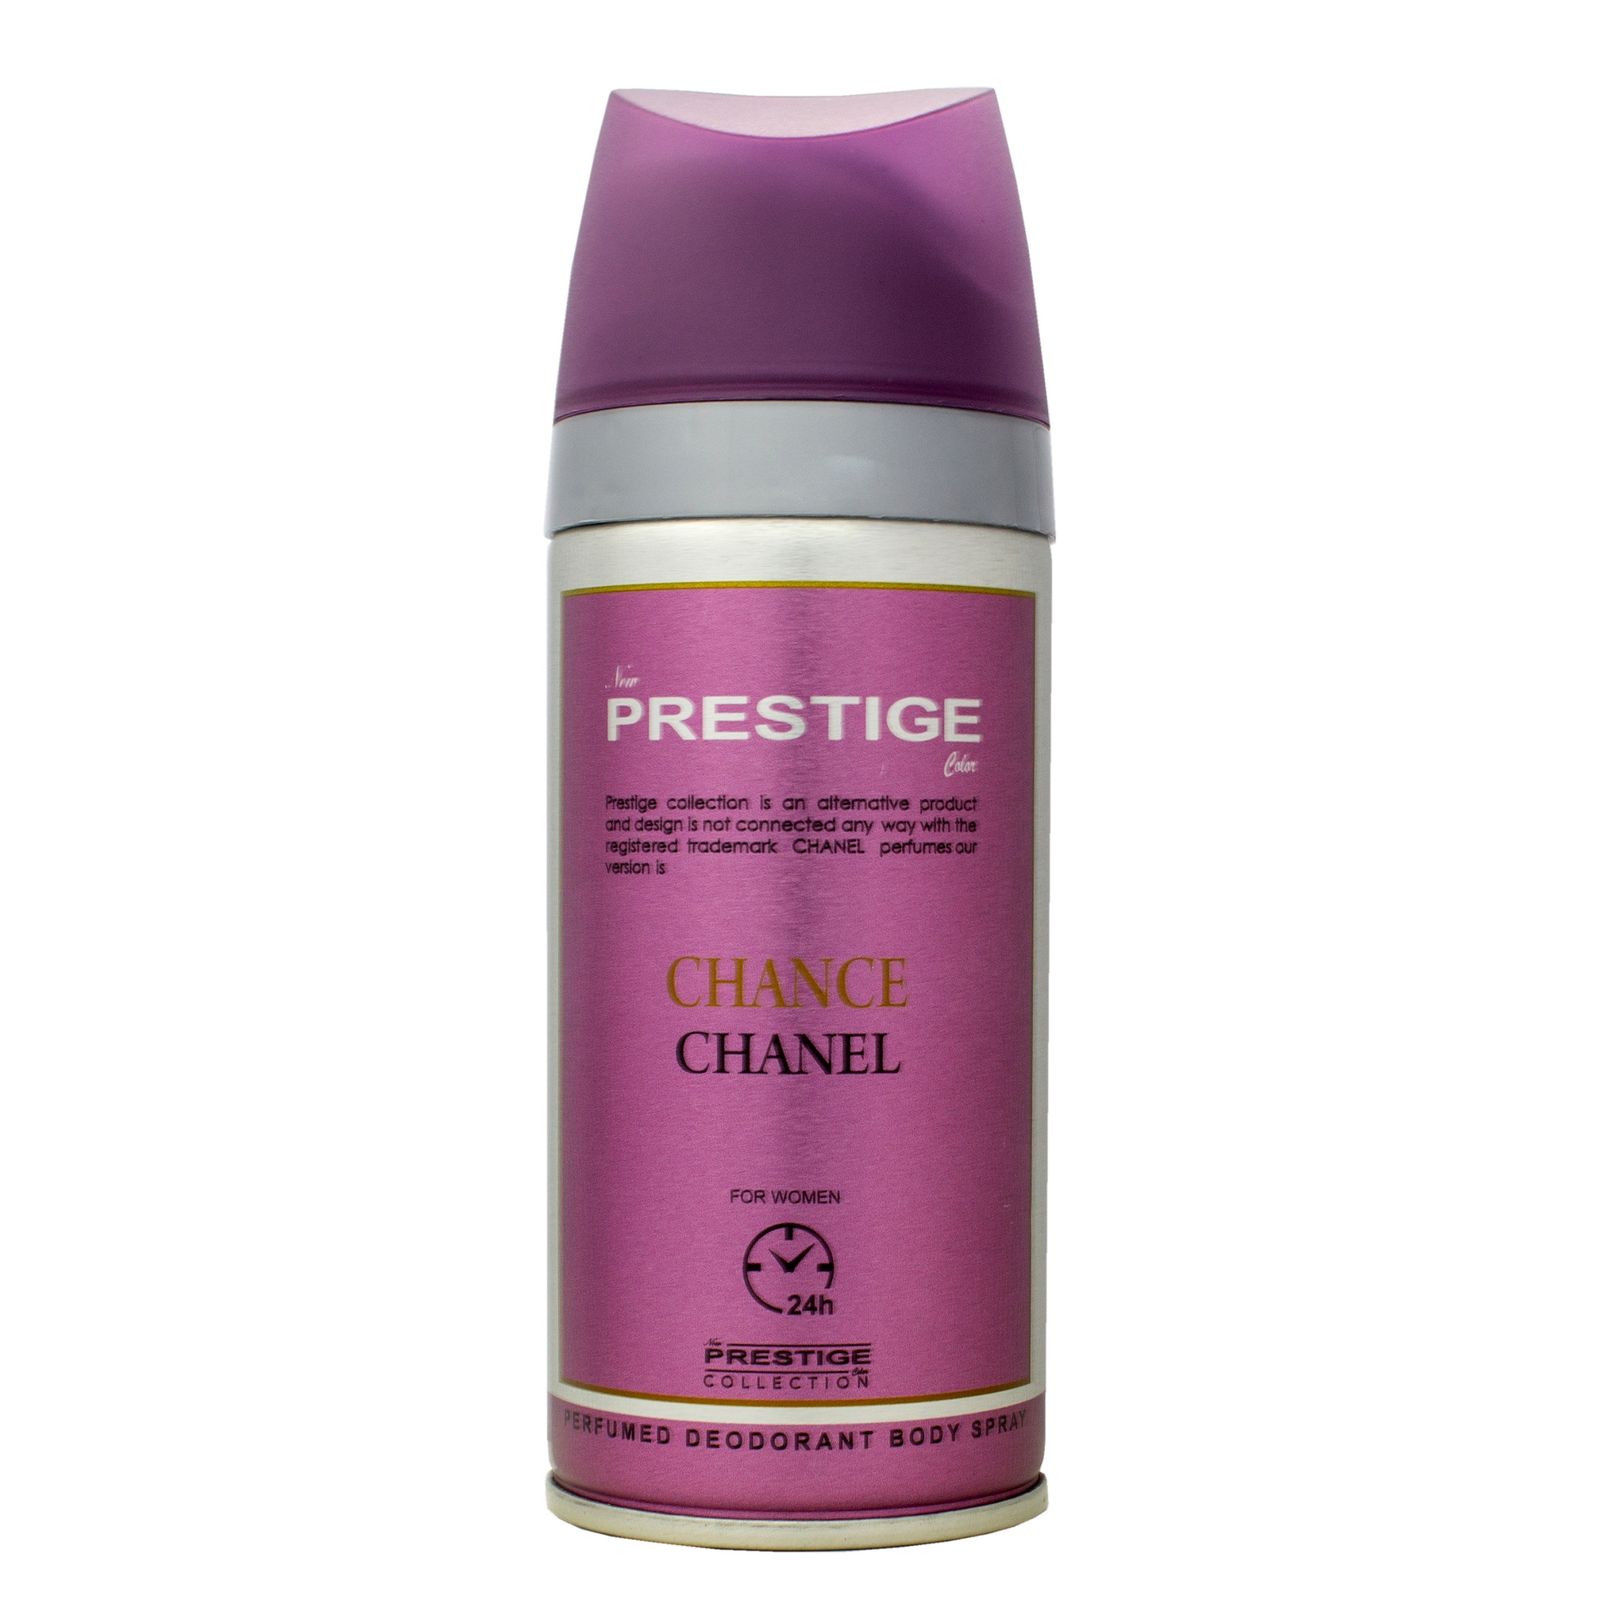  اسپری زنانه Prestige مدل Chanel CHNC حجم 150 میلی لیتر -  - 1